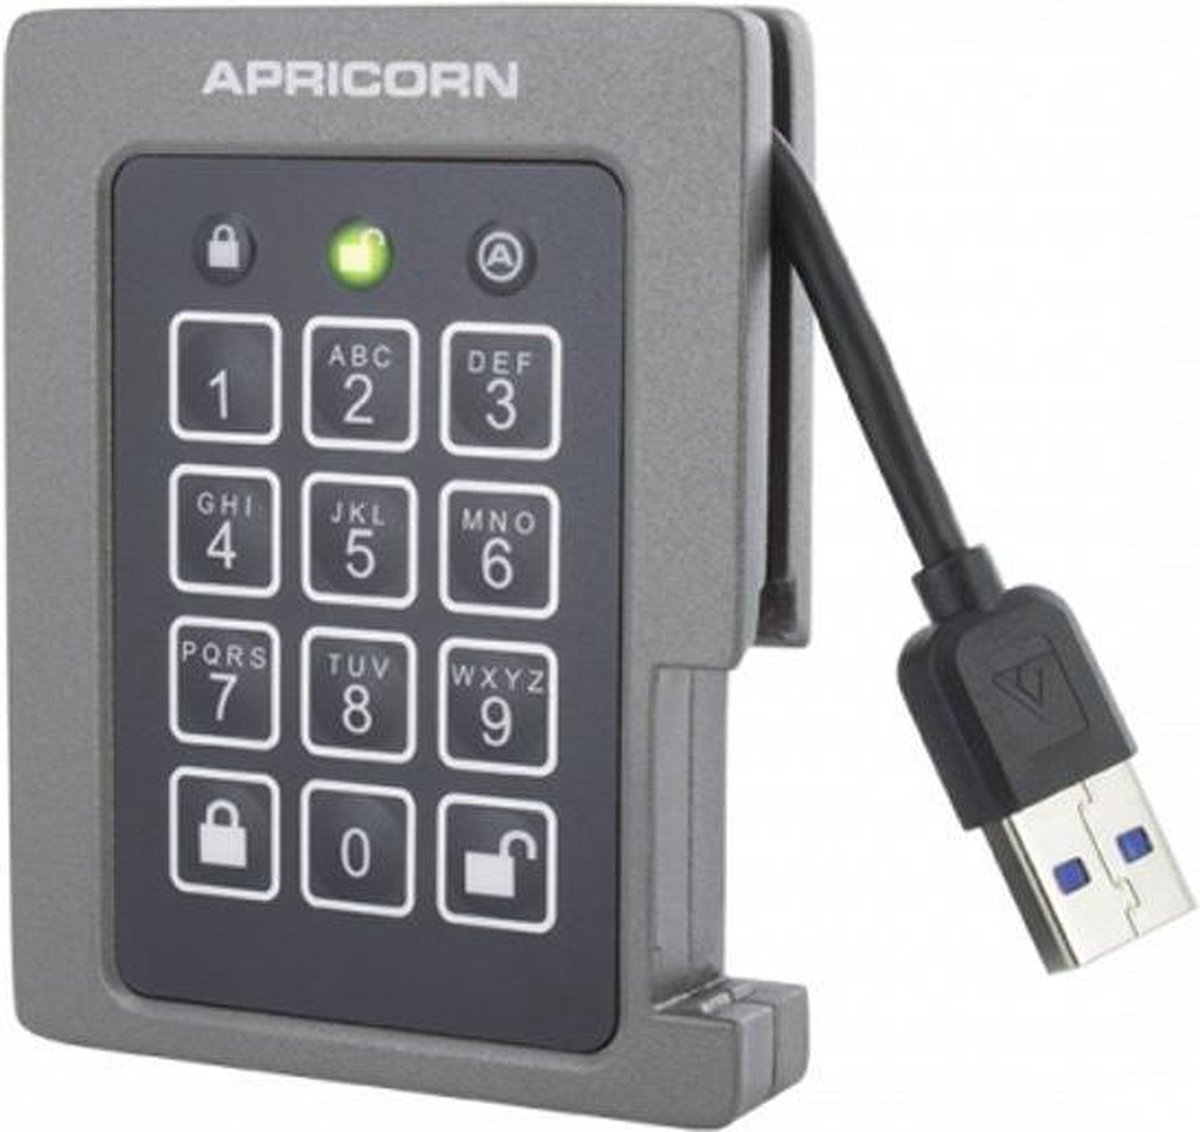 bol.com | Apricorn Padlock - FIPS validated, 1TB SSD USB 3.0